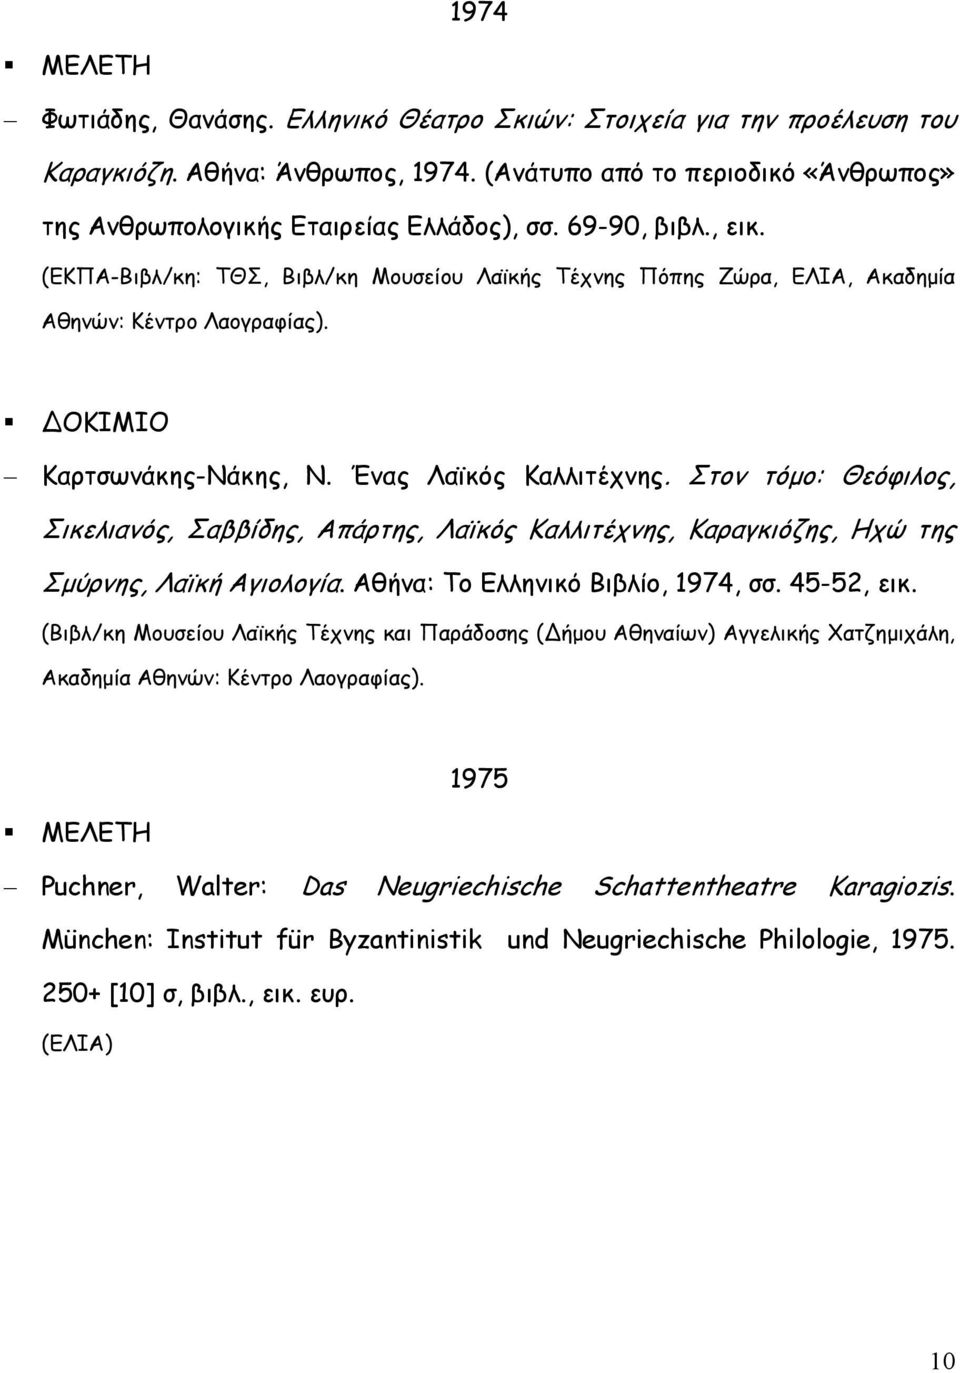 Στον τόµο: Θεόφιλος, Σικελιανός, Σαββίδης, Απάρτης, Λαϊκός Καλλιτέχνης, Καραγκιόζης, Ηχώ της Σµύρνης, Λαϊκή Αγιολογία. Αθήνα: Το Ελληνικό Βιβλίο, 1974, σσ. 45-52, εικ.